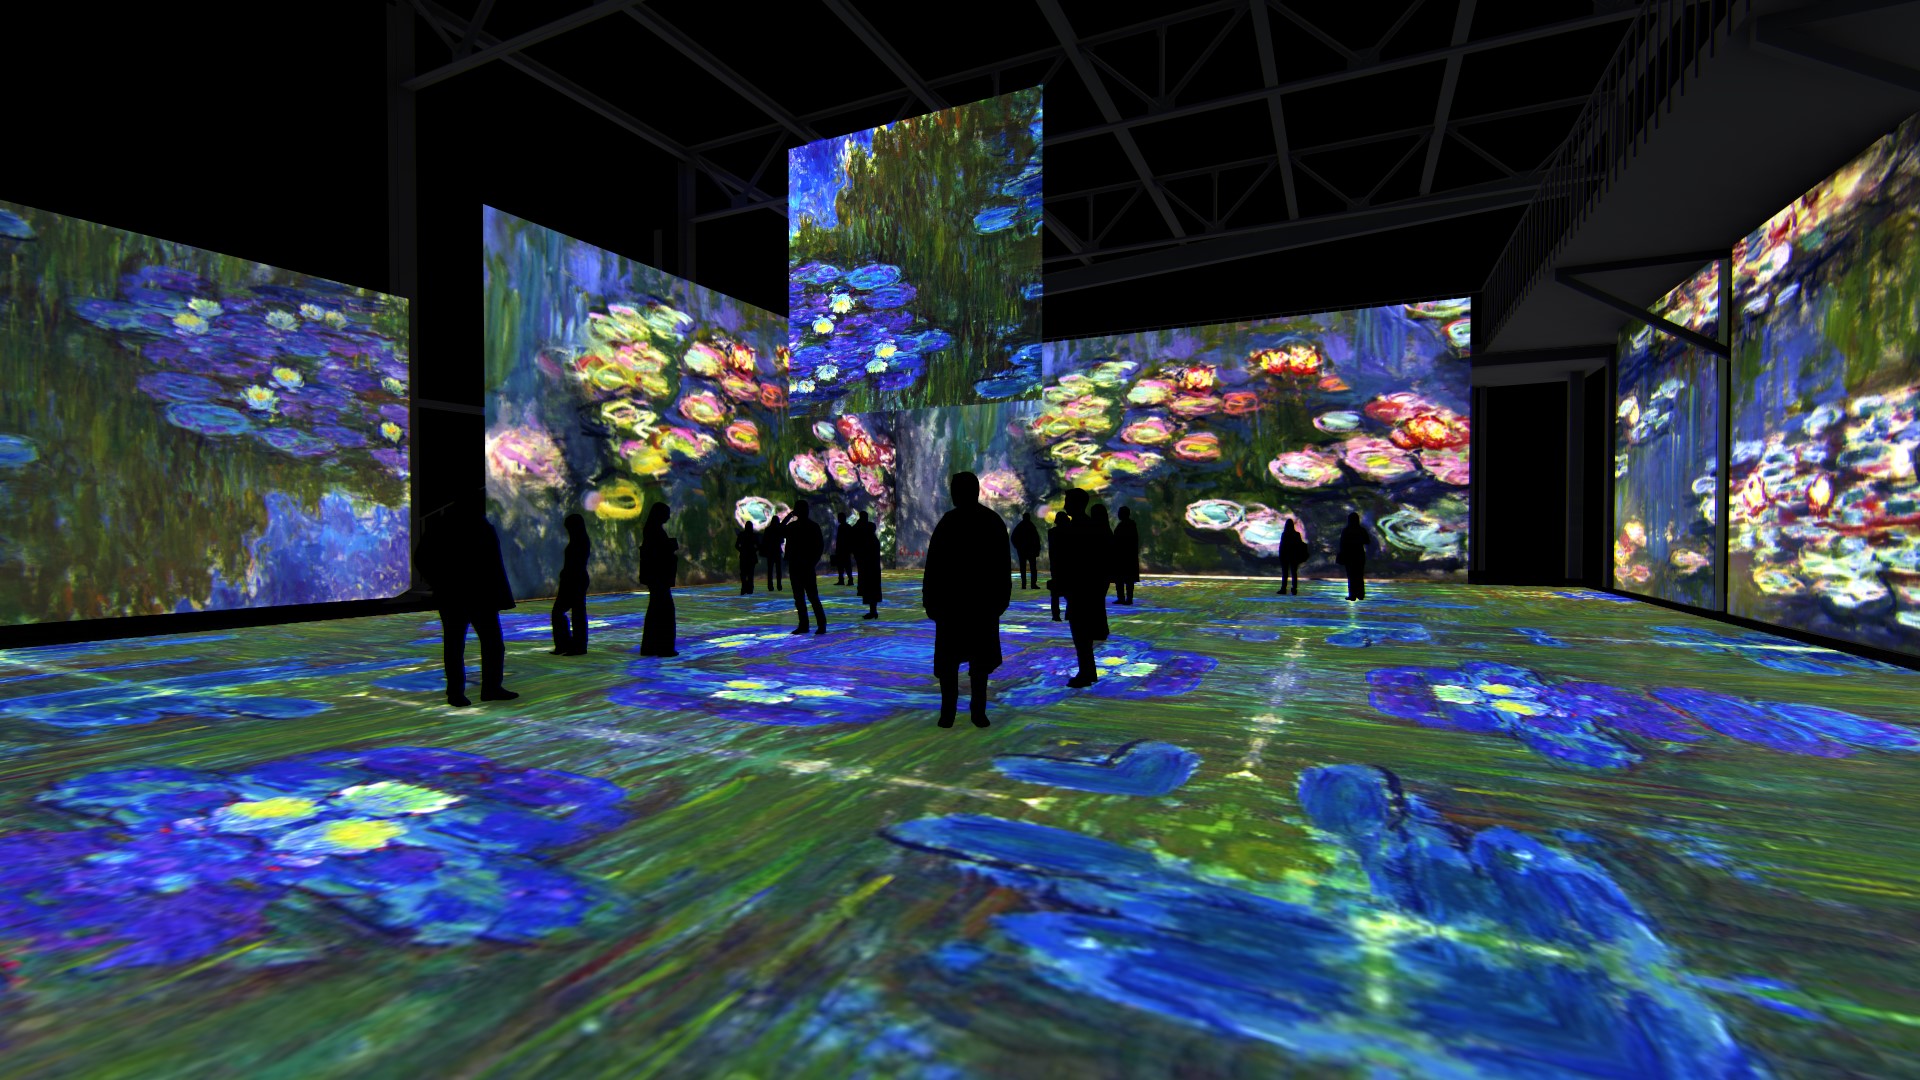 Мультимедийная выставка представляет шесть интерактивных зон